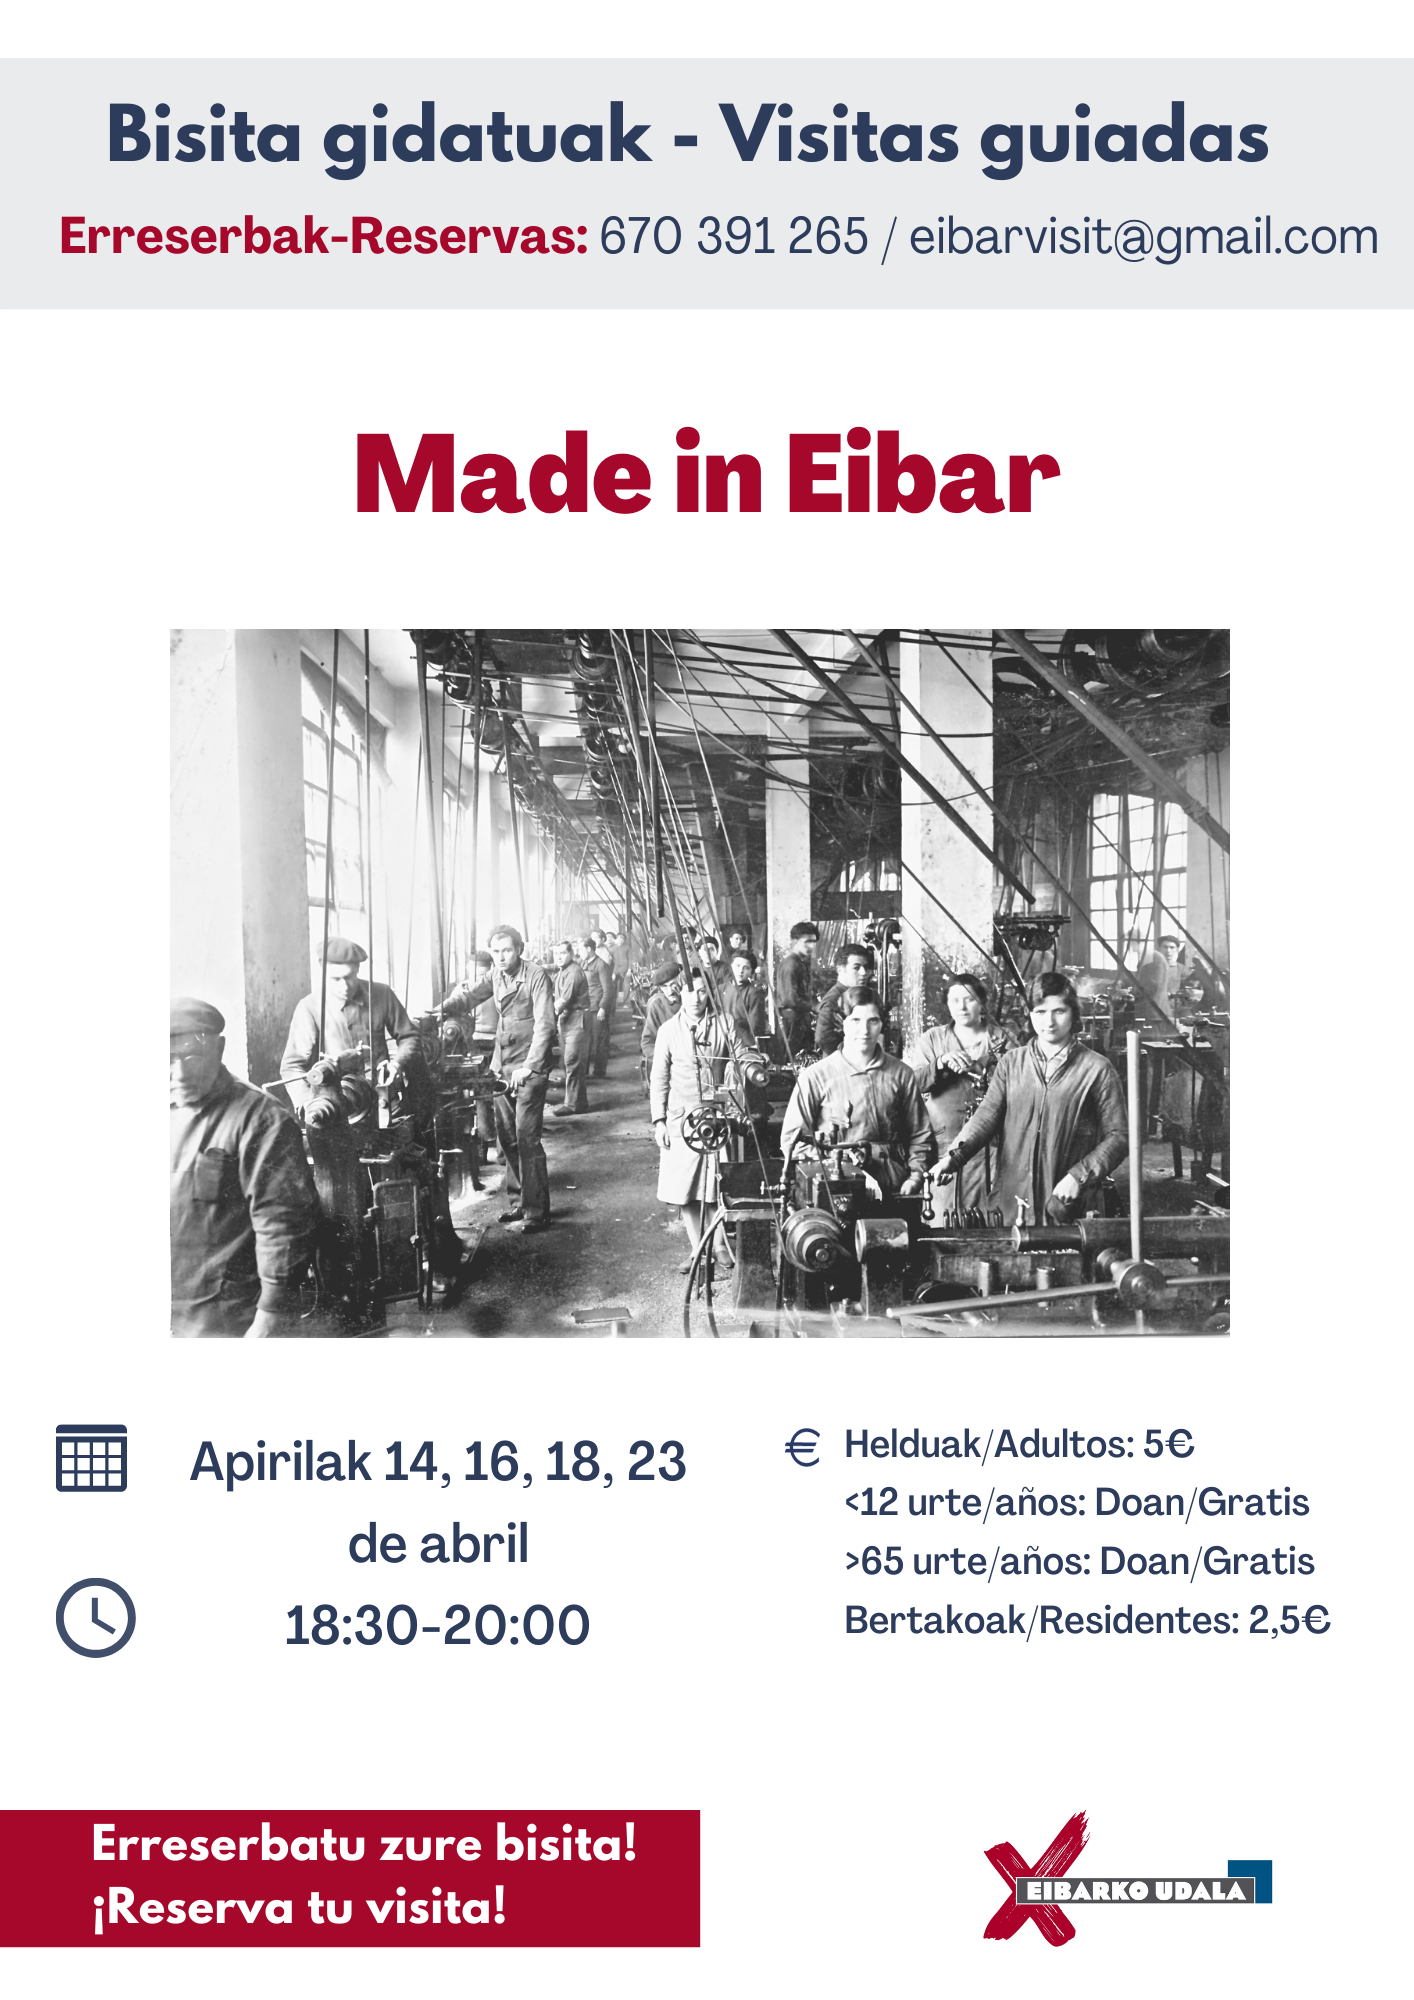 El Ayuntamiento de Eibar pone en marcha una nueva edición de visitas guiadas para poner en valor la historia y el atractivo de la ciudad